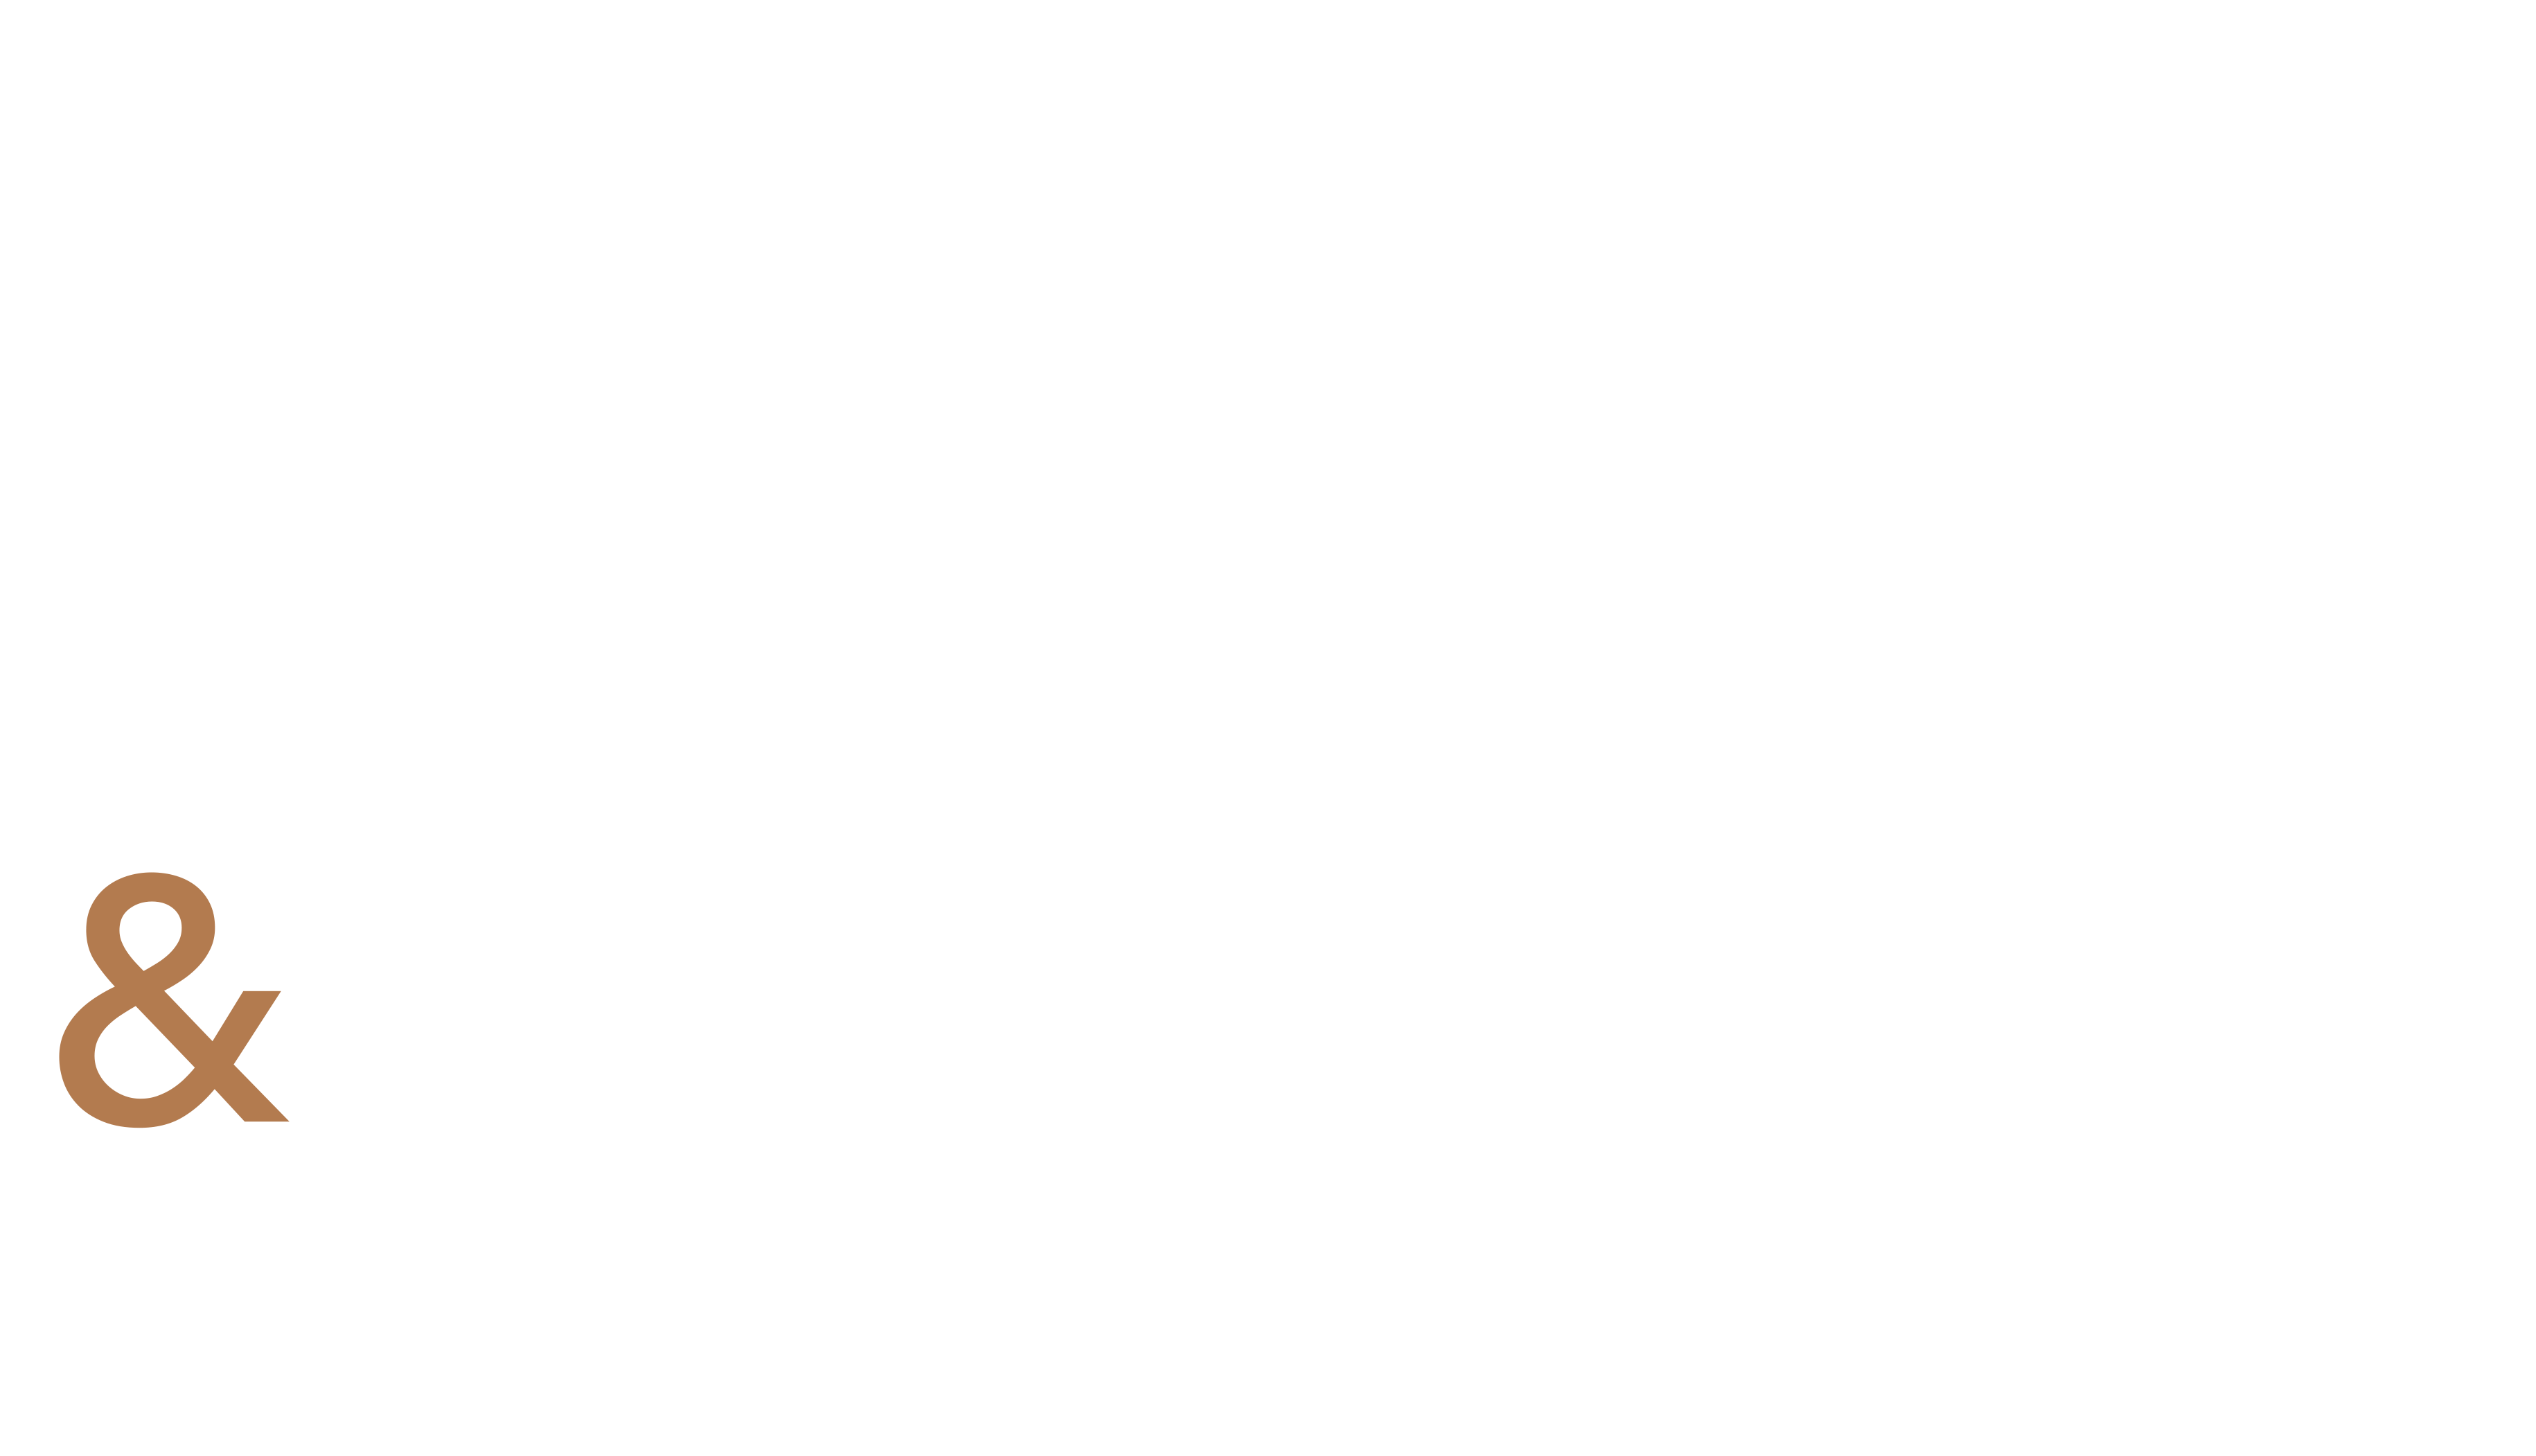 Battiston Violeau & Associés